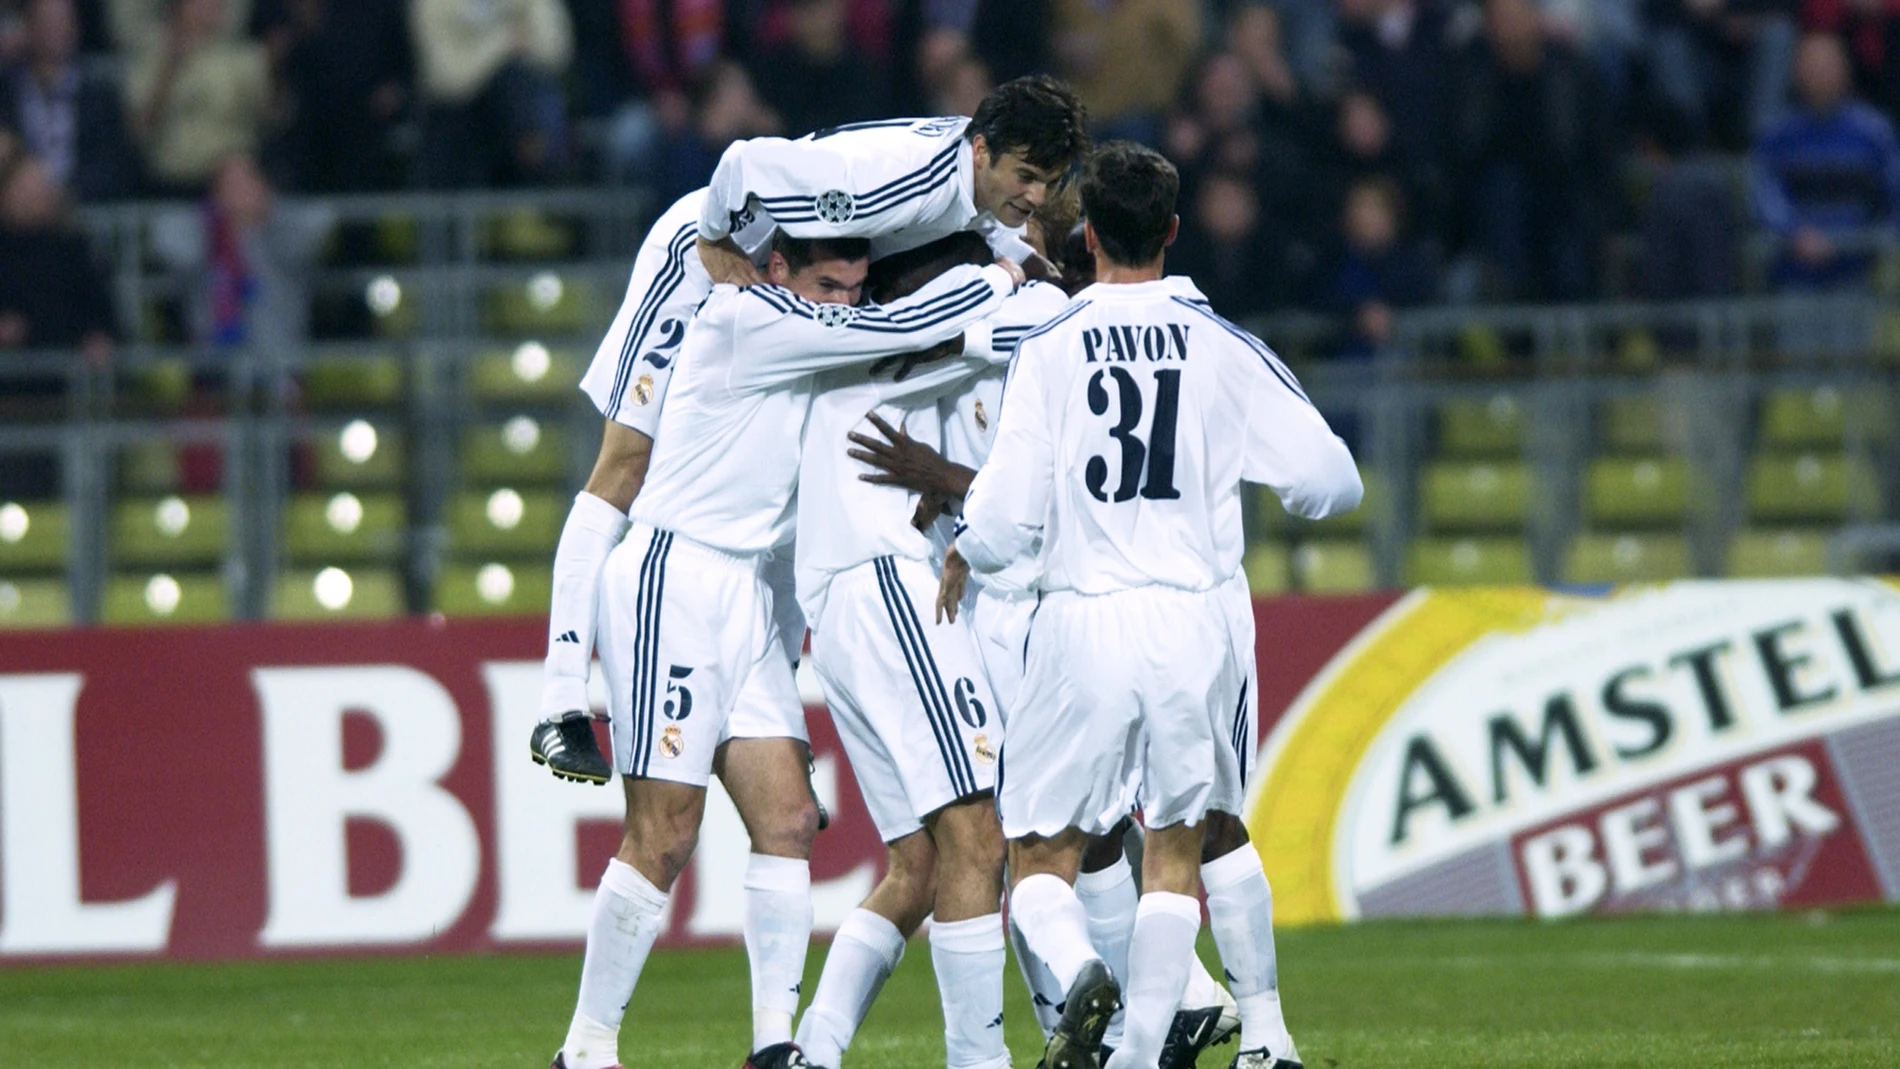 Geremi celebrando un gol en la Champions League de 2002 con sus compañeros del Real Madrid